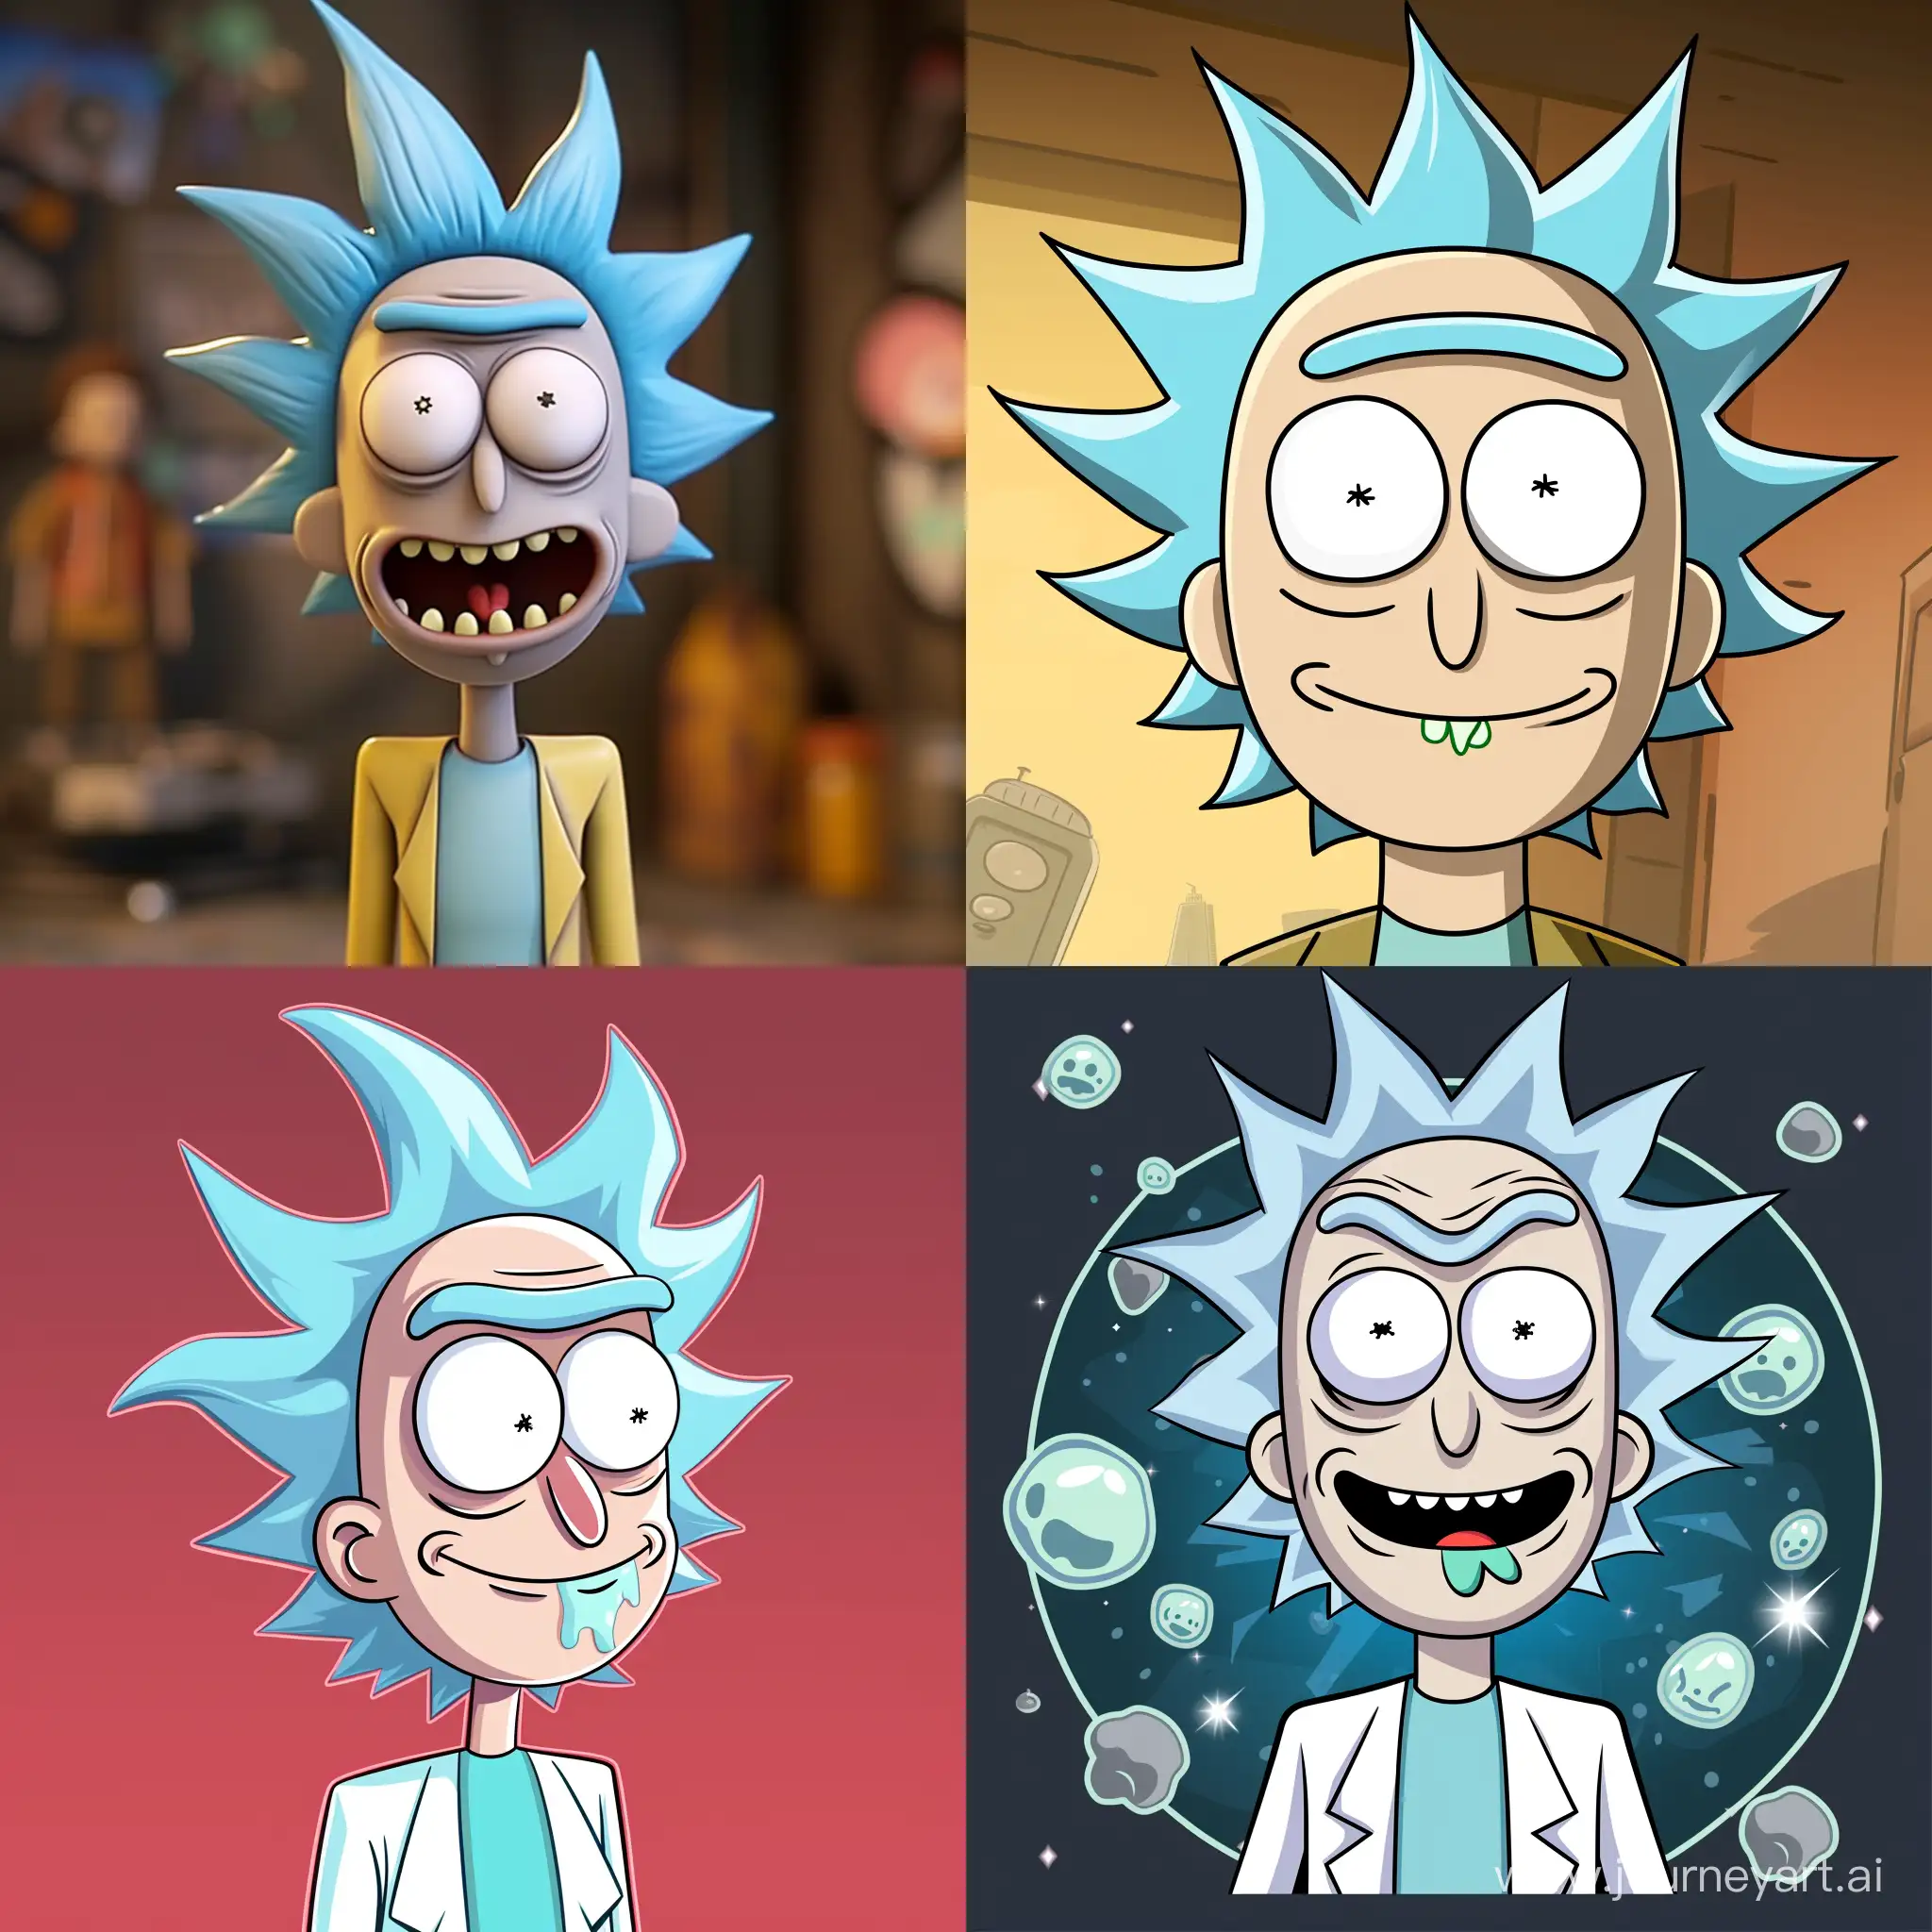 Cartoon-Character-Rick-Reacting-in-Reactjs